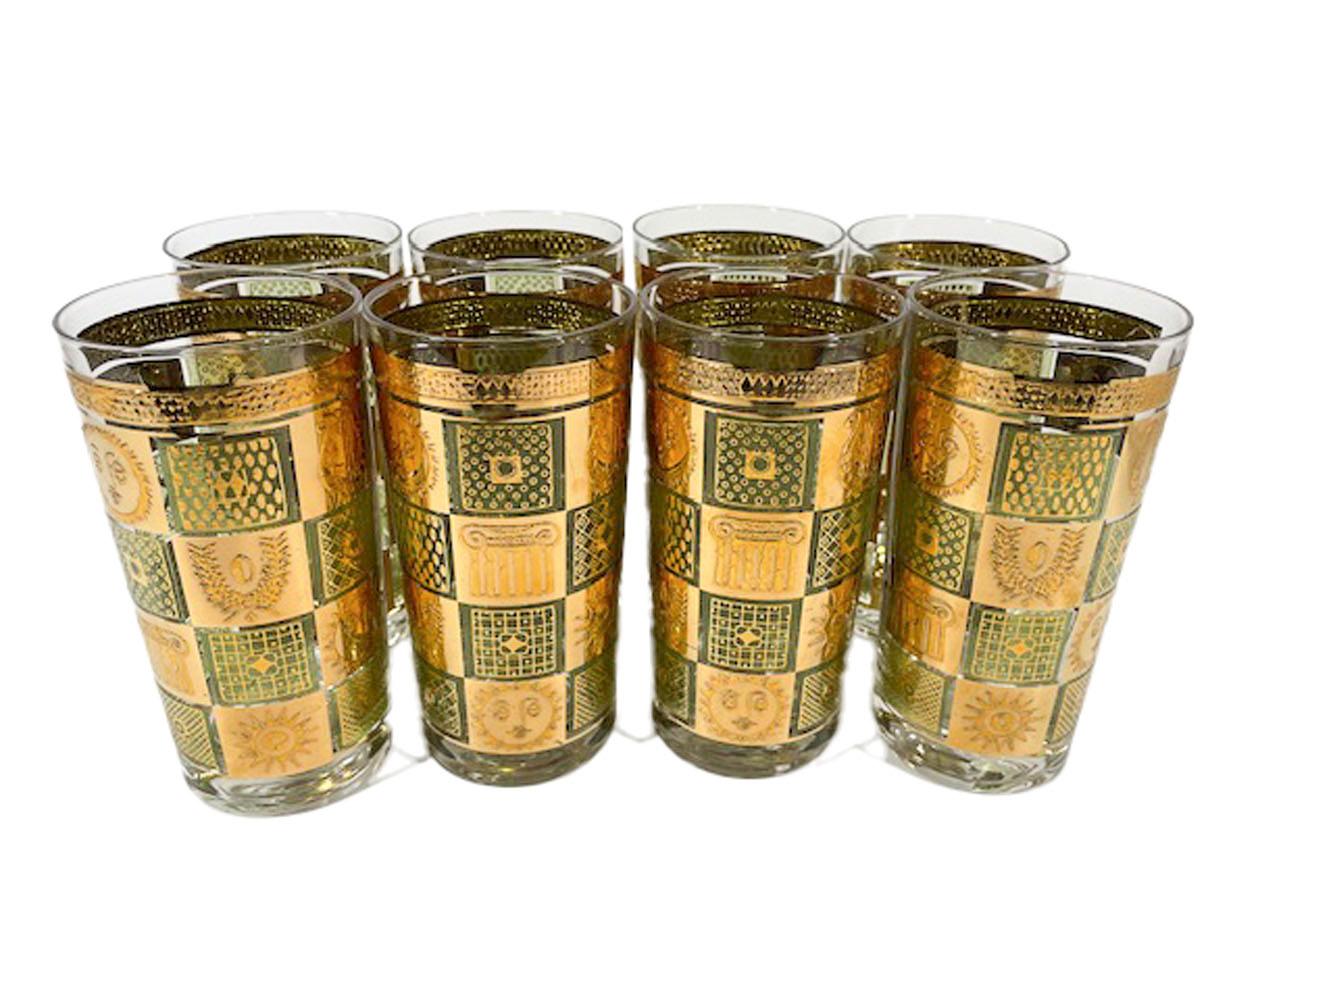 Ensemble de huit verres highball vintage conçus par Georges Briard et présentant un motif à carreaux en or 22 carats sur émail vert translucide. Chaque carré contient un motif classique comprenant des soleils avec des visages, des chapiteaux de